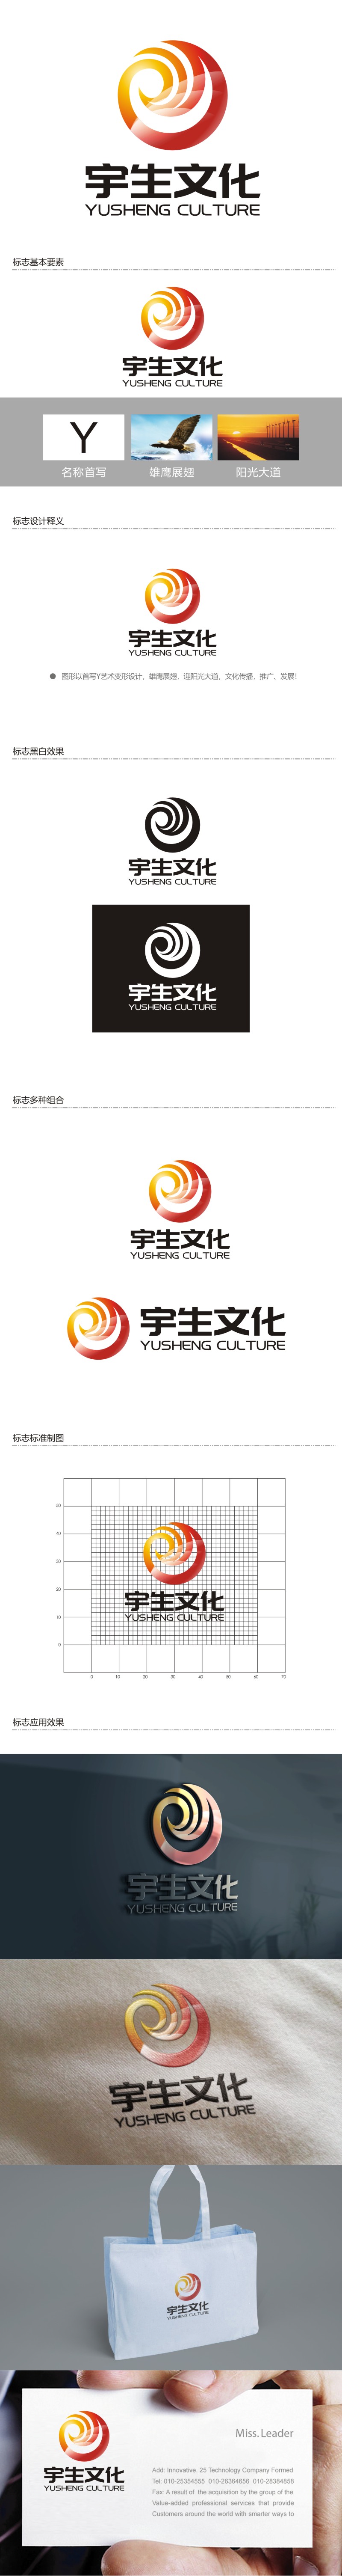 谭家强的山东宇生文化股份有限公司logo设计